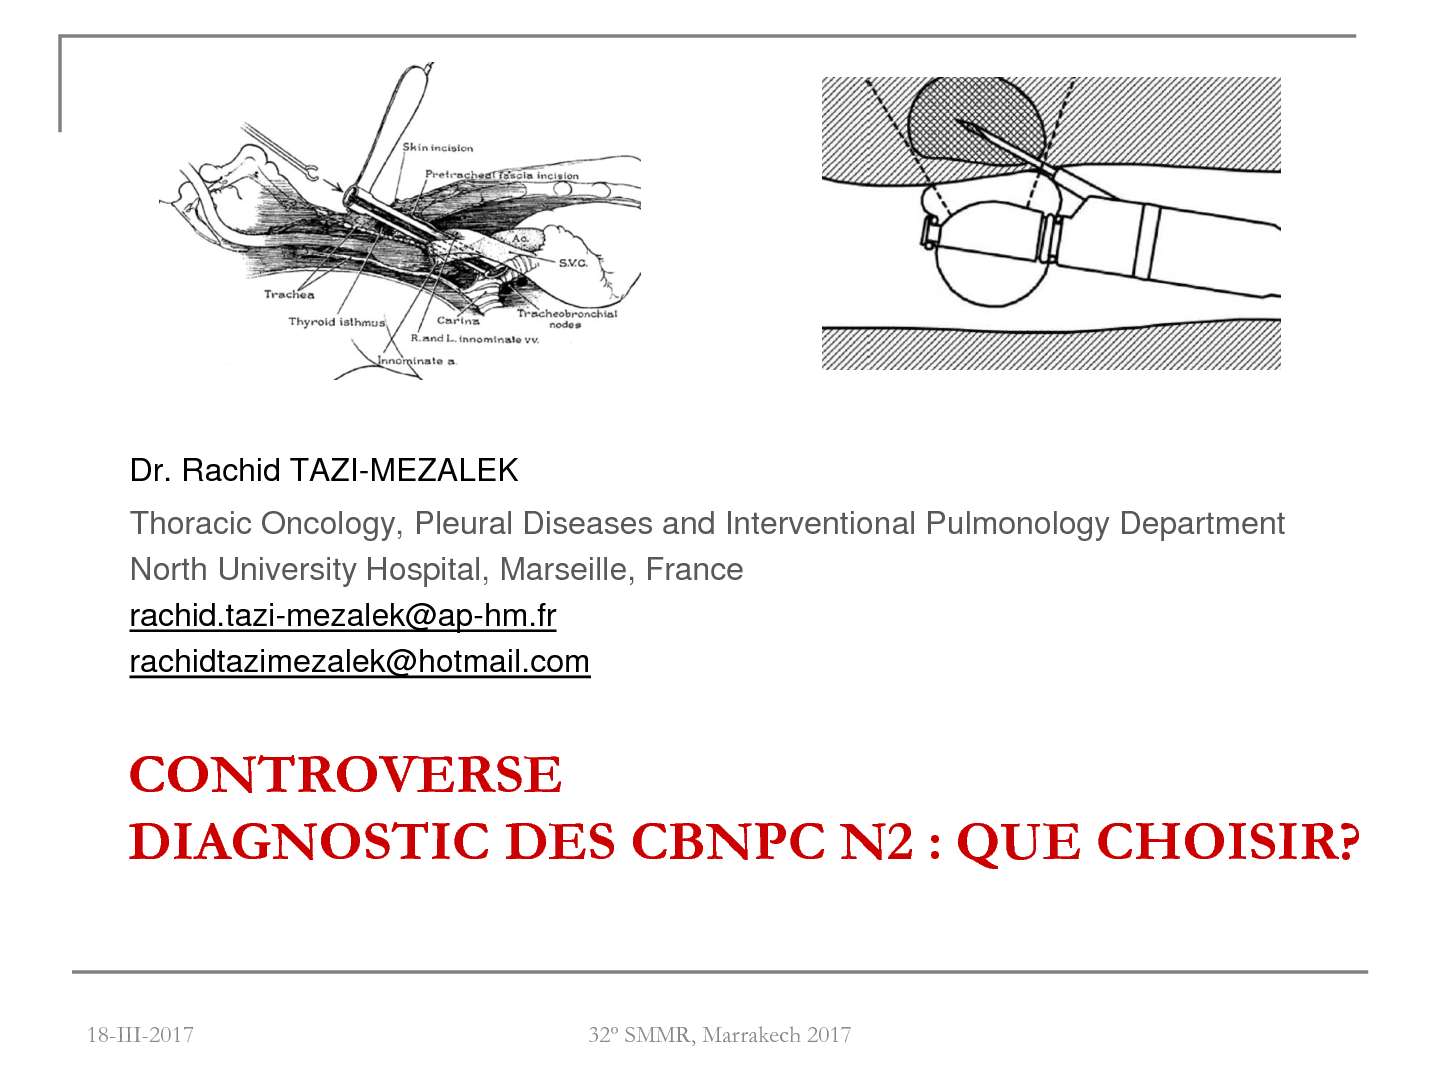 Diagnostic des CBNPC N2 : Que choisir ? Pour EBUS : R. TAZI MEZAlEK (Marseille)